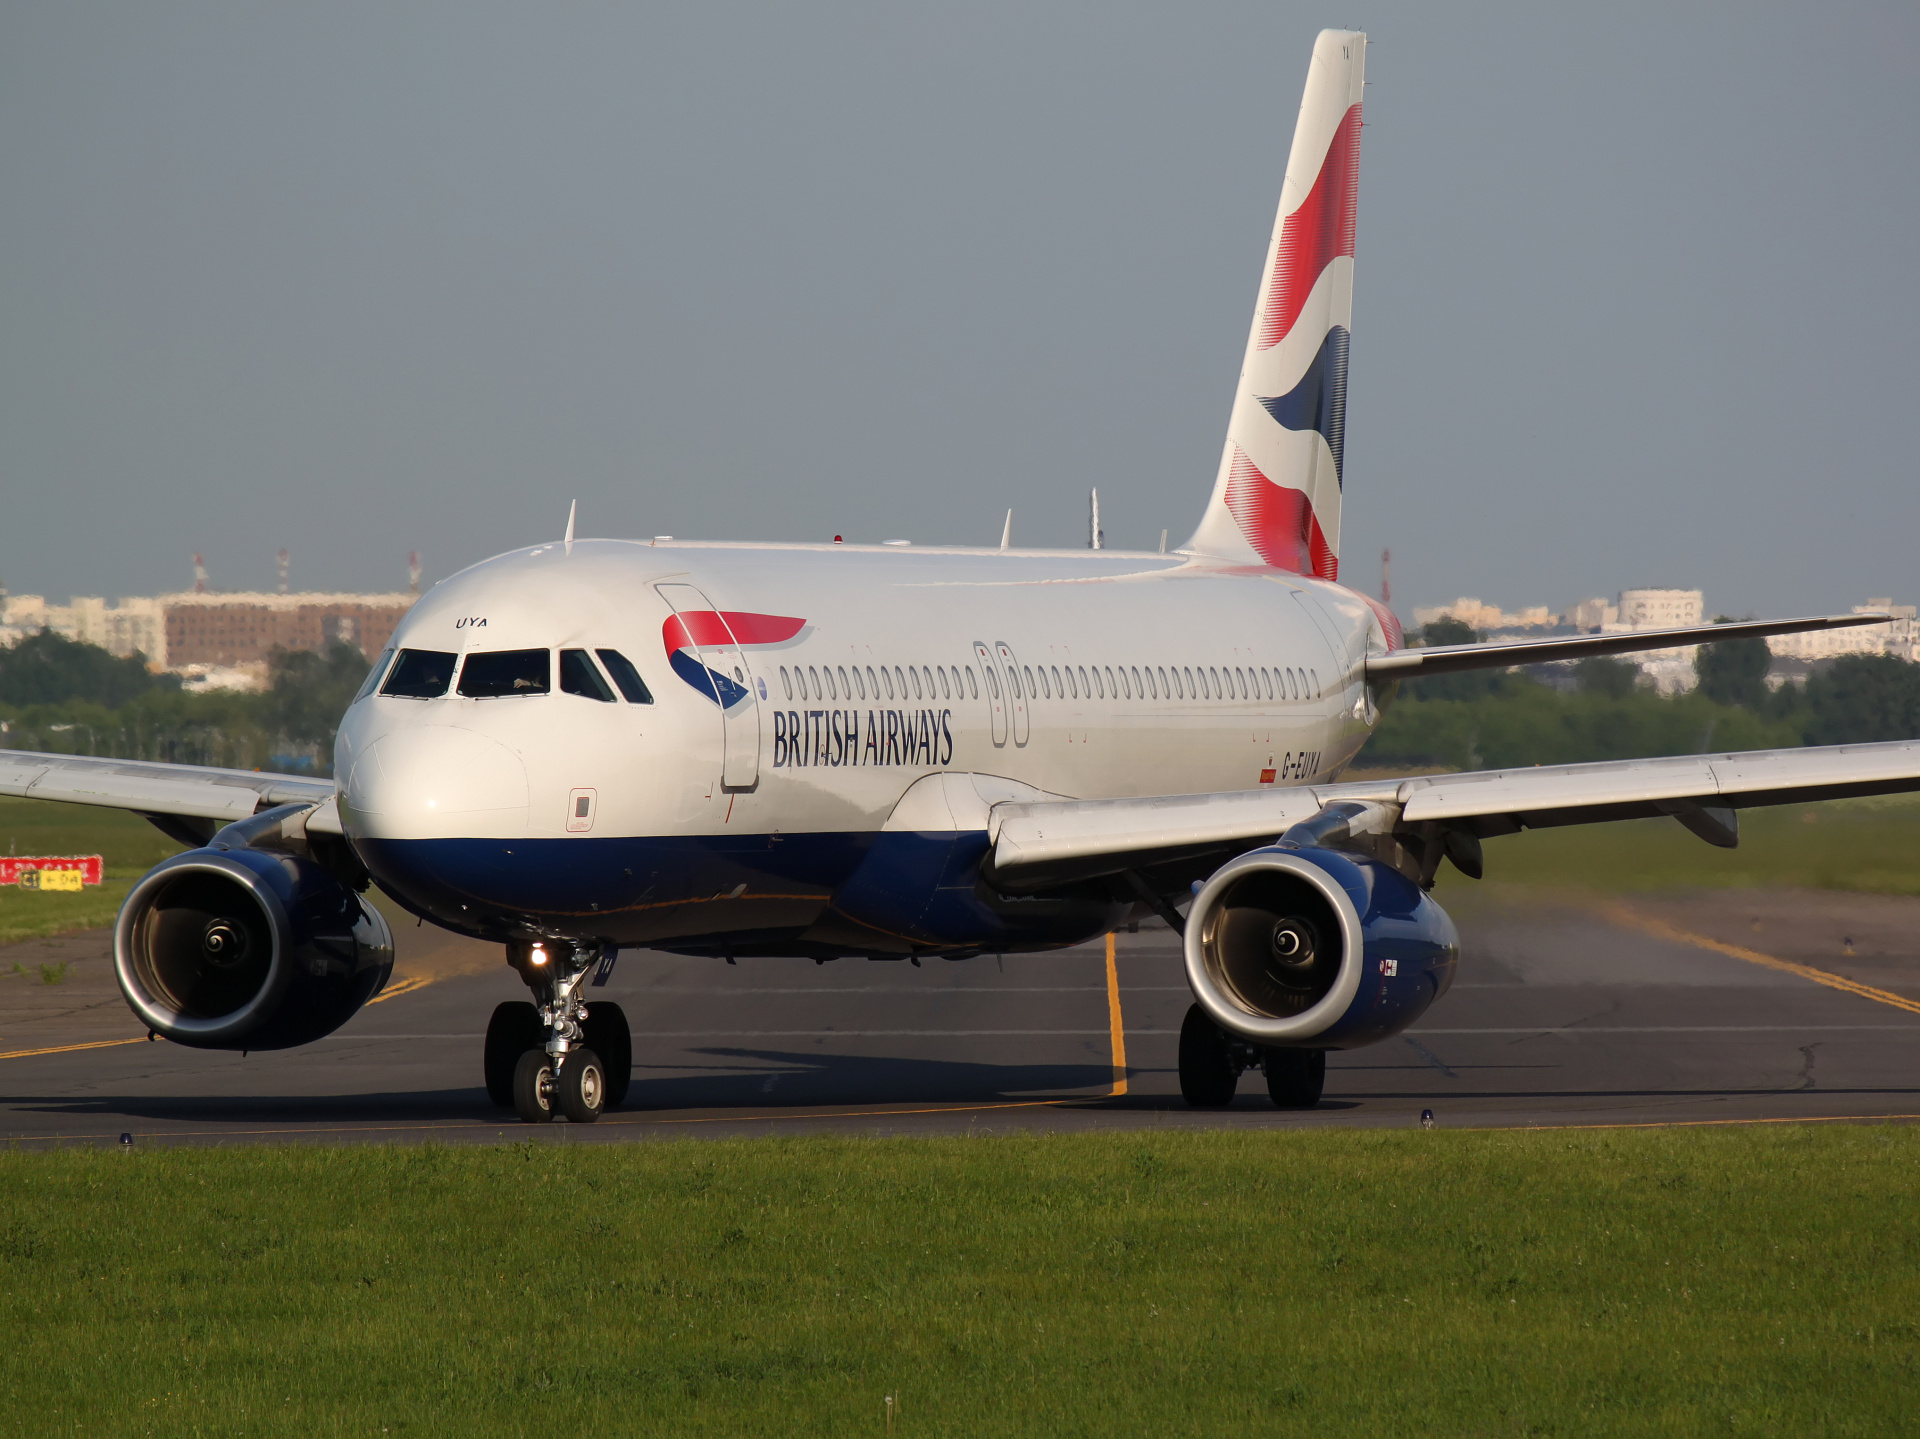 G-EUYA (Aircraft » EPWA Spotting » Airbus A320-200 » British Airways)